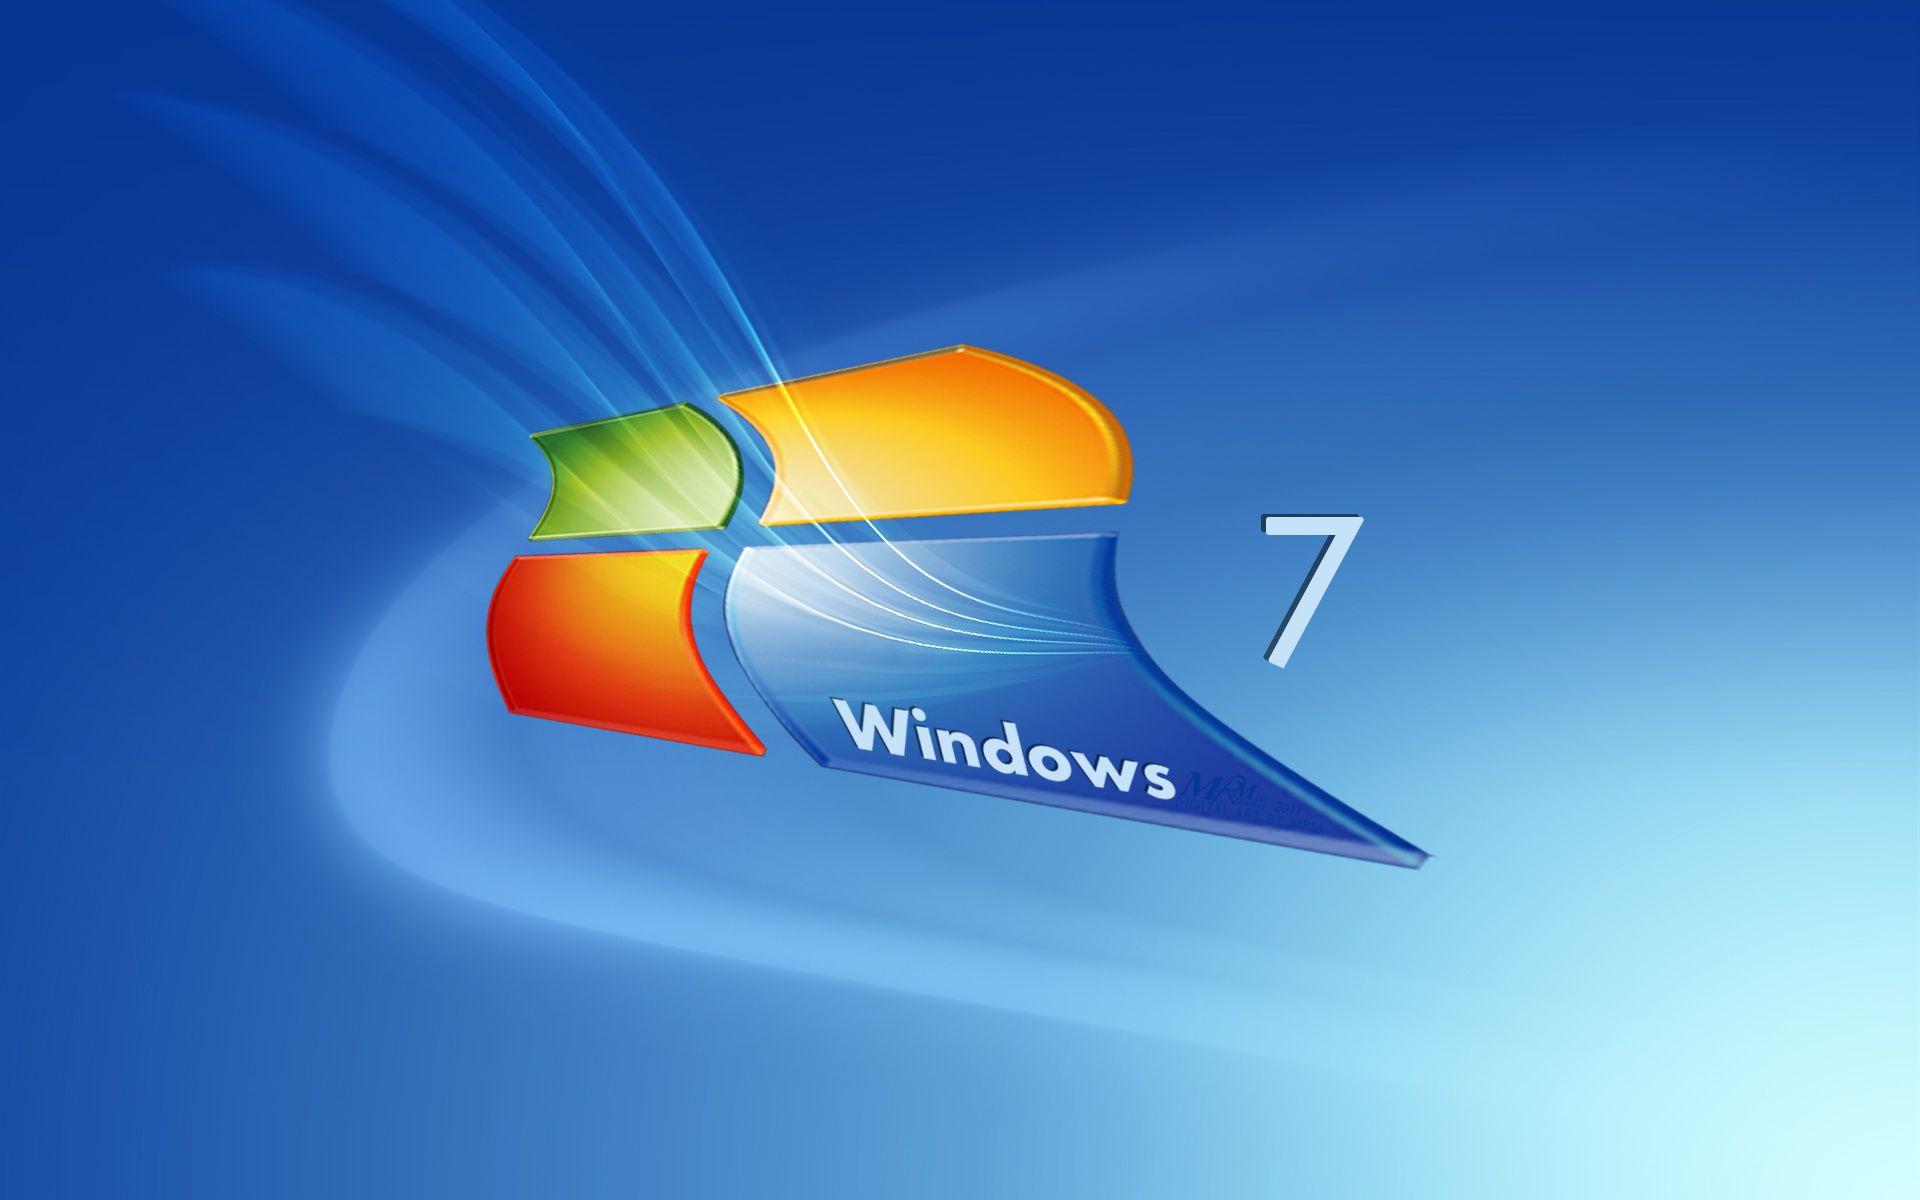 Hình nền Windows 7 1920x1200.  Hình nền năm 2019. Hình nền Windows